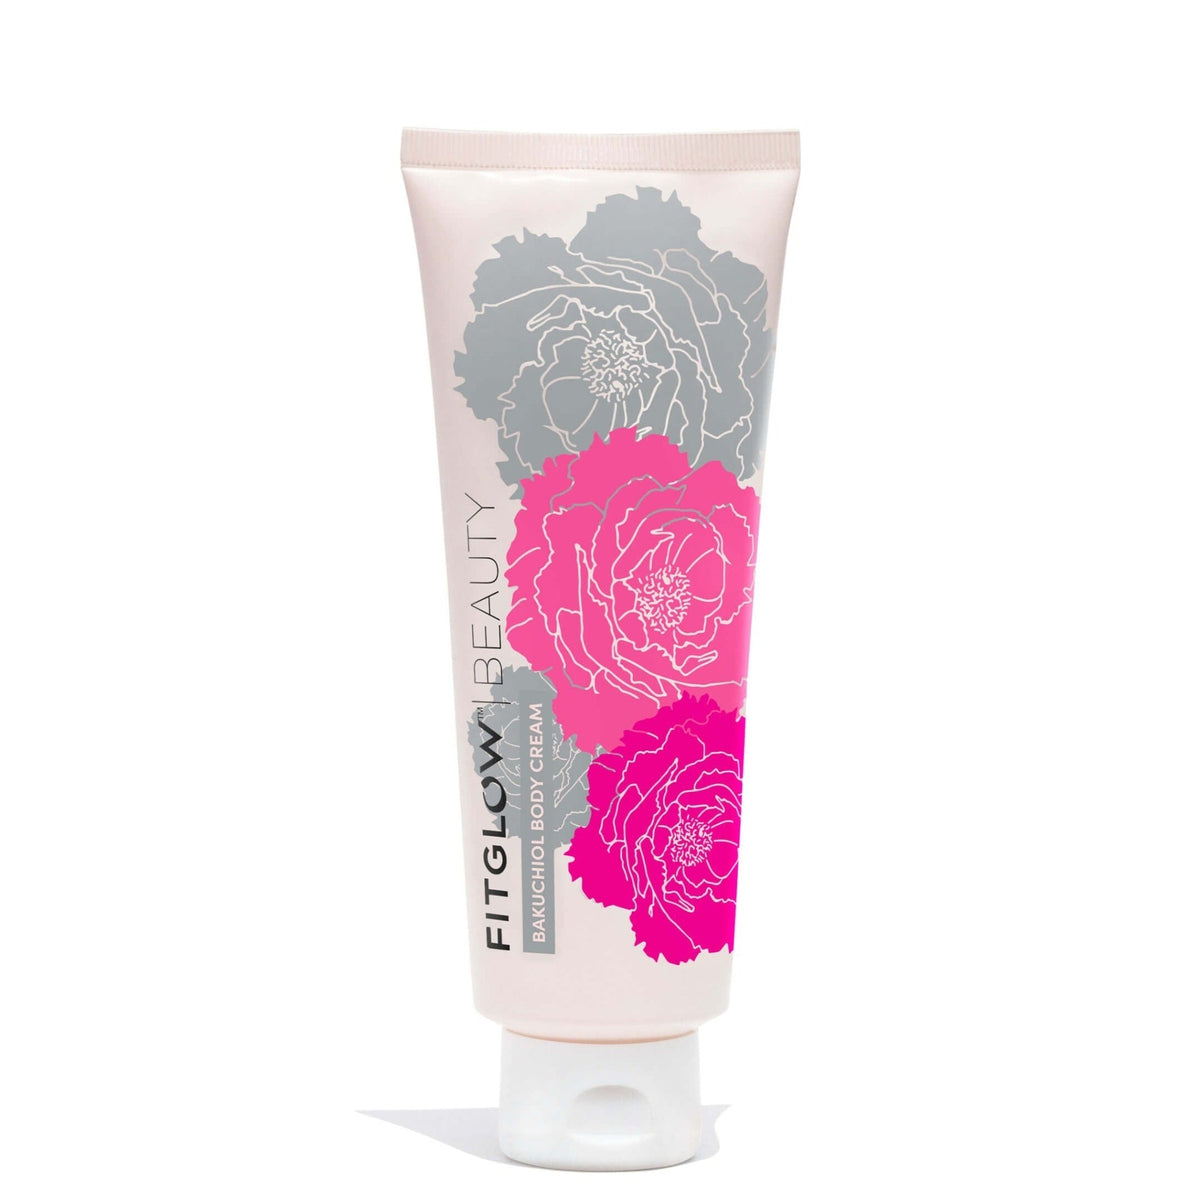 best of clean beauty 2022 - fitglow beauty bakuchiol body cream